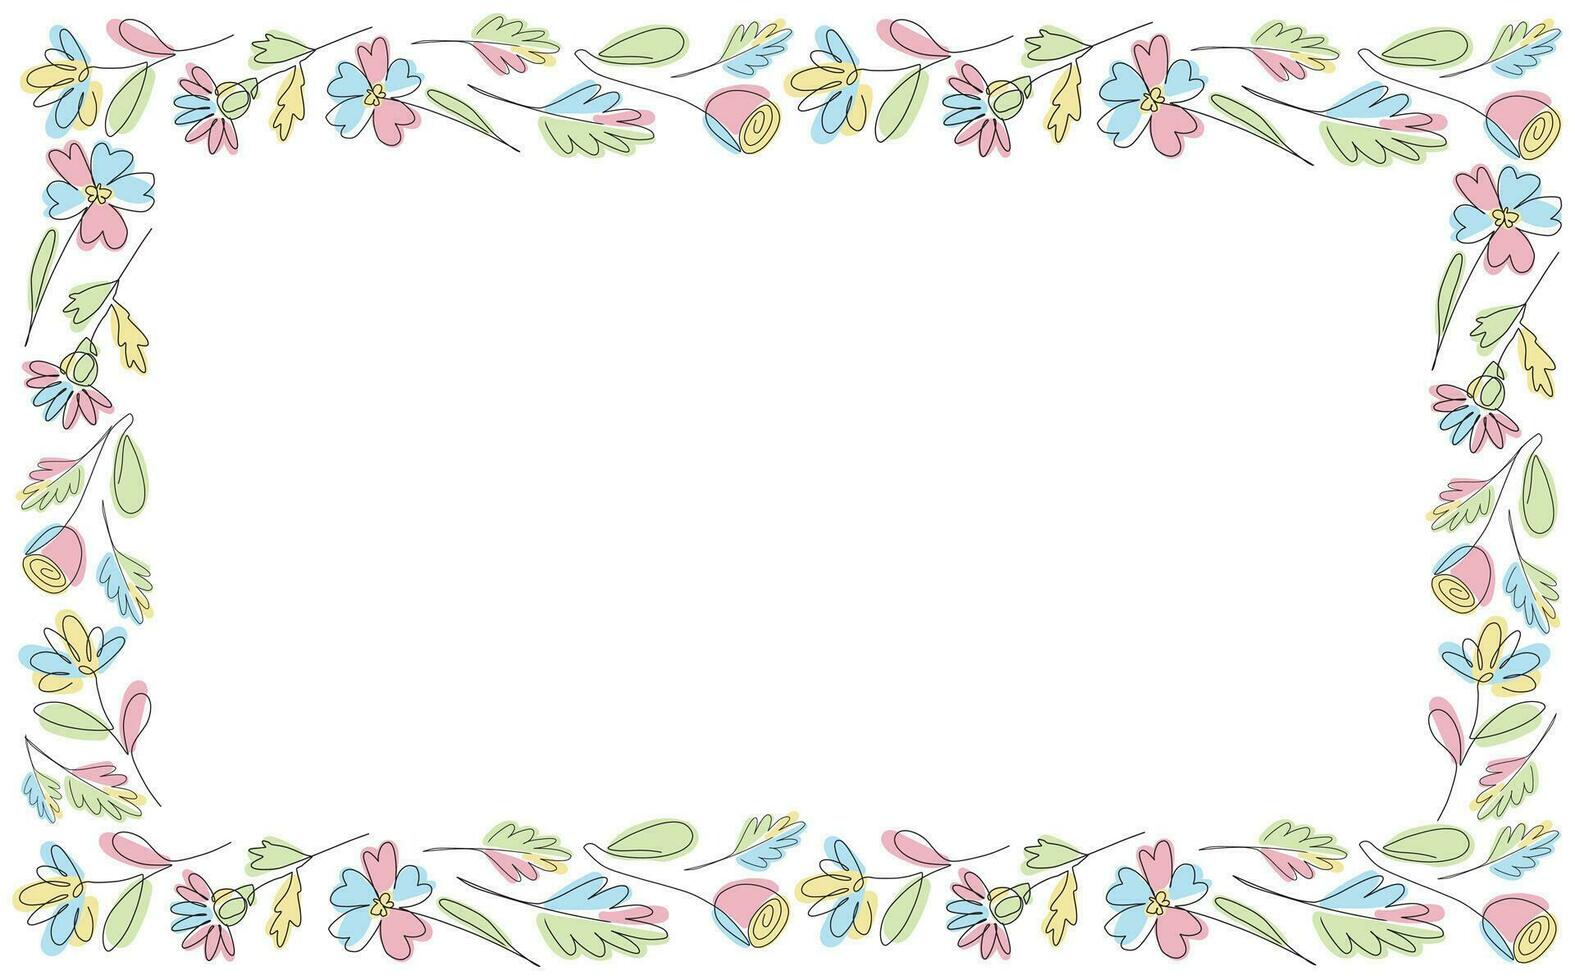 Vektor einer Linie Blumen rahmen, Pastell- Blumen- Rechteck Grenze, einfach Hochzeit Pflanze Einladung Karte